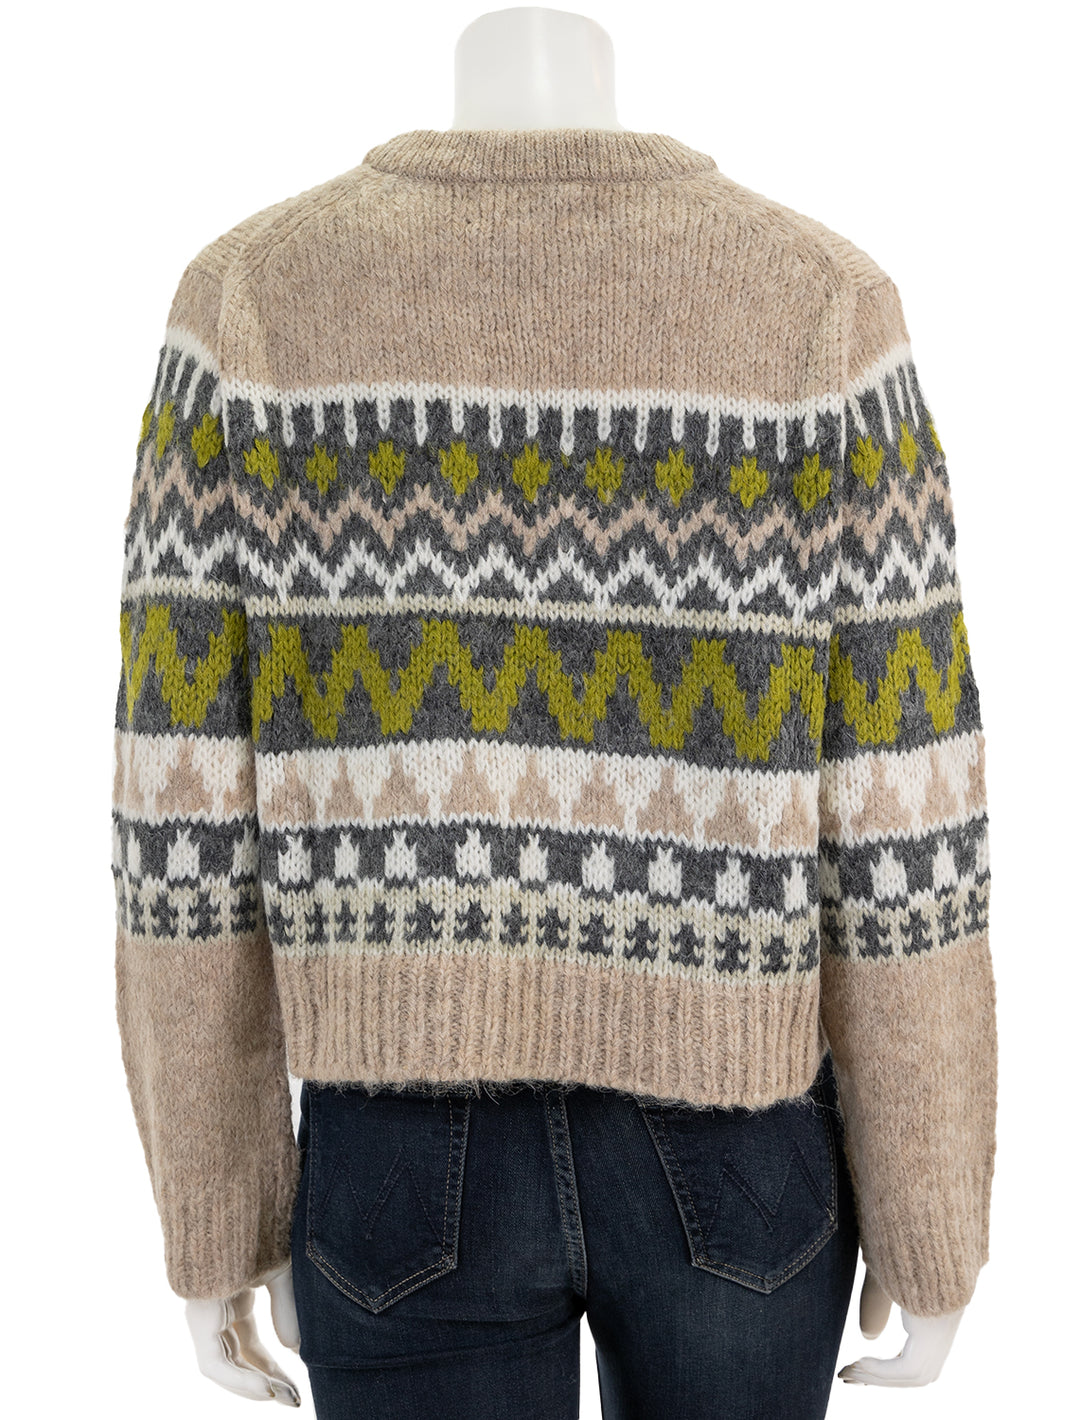 Back view of Velvet's Makenzie Sweater in Pistachio Multi.